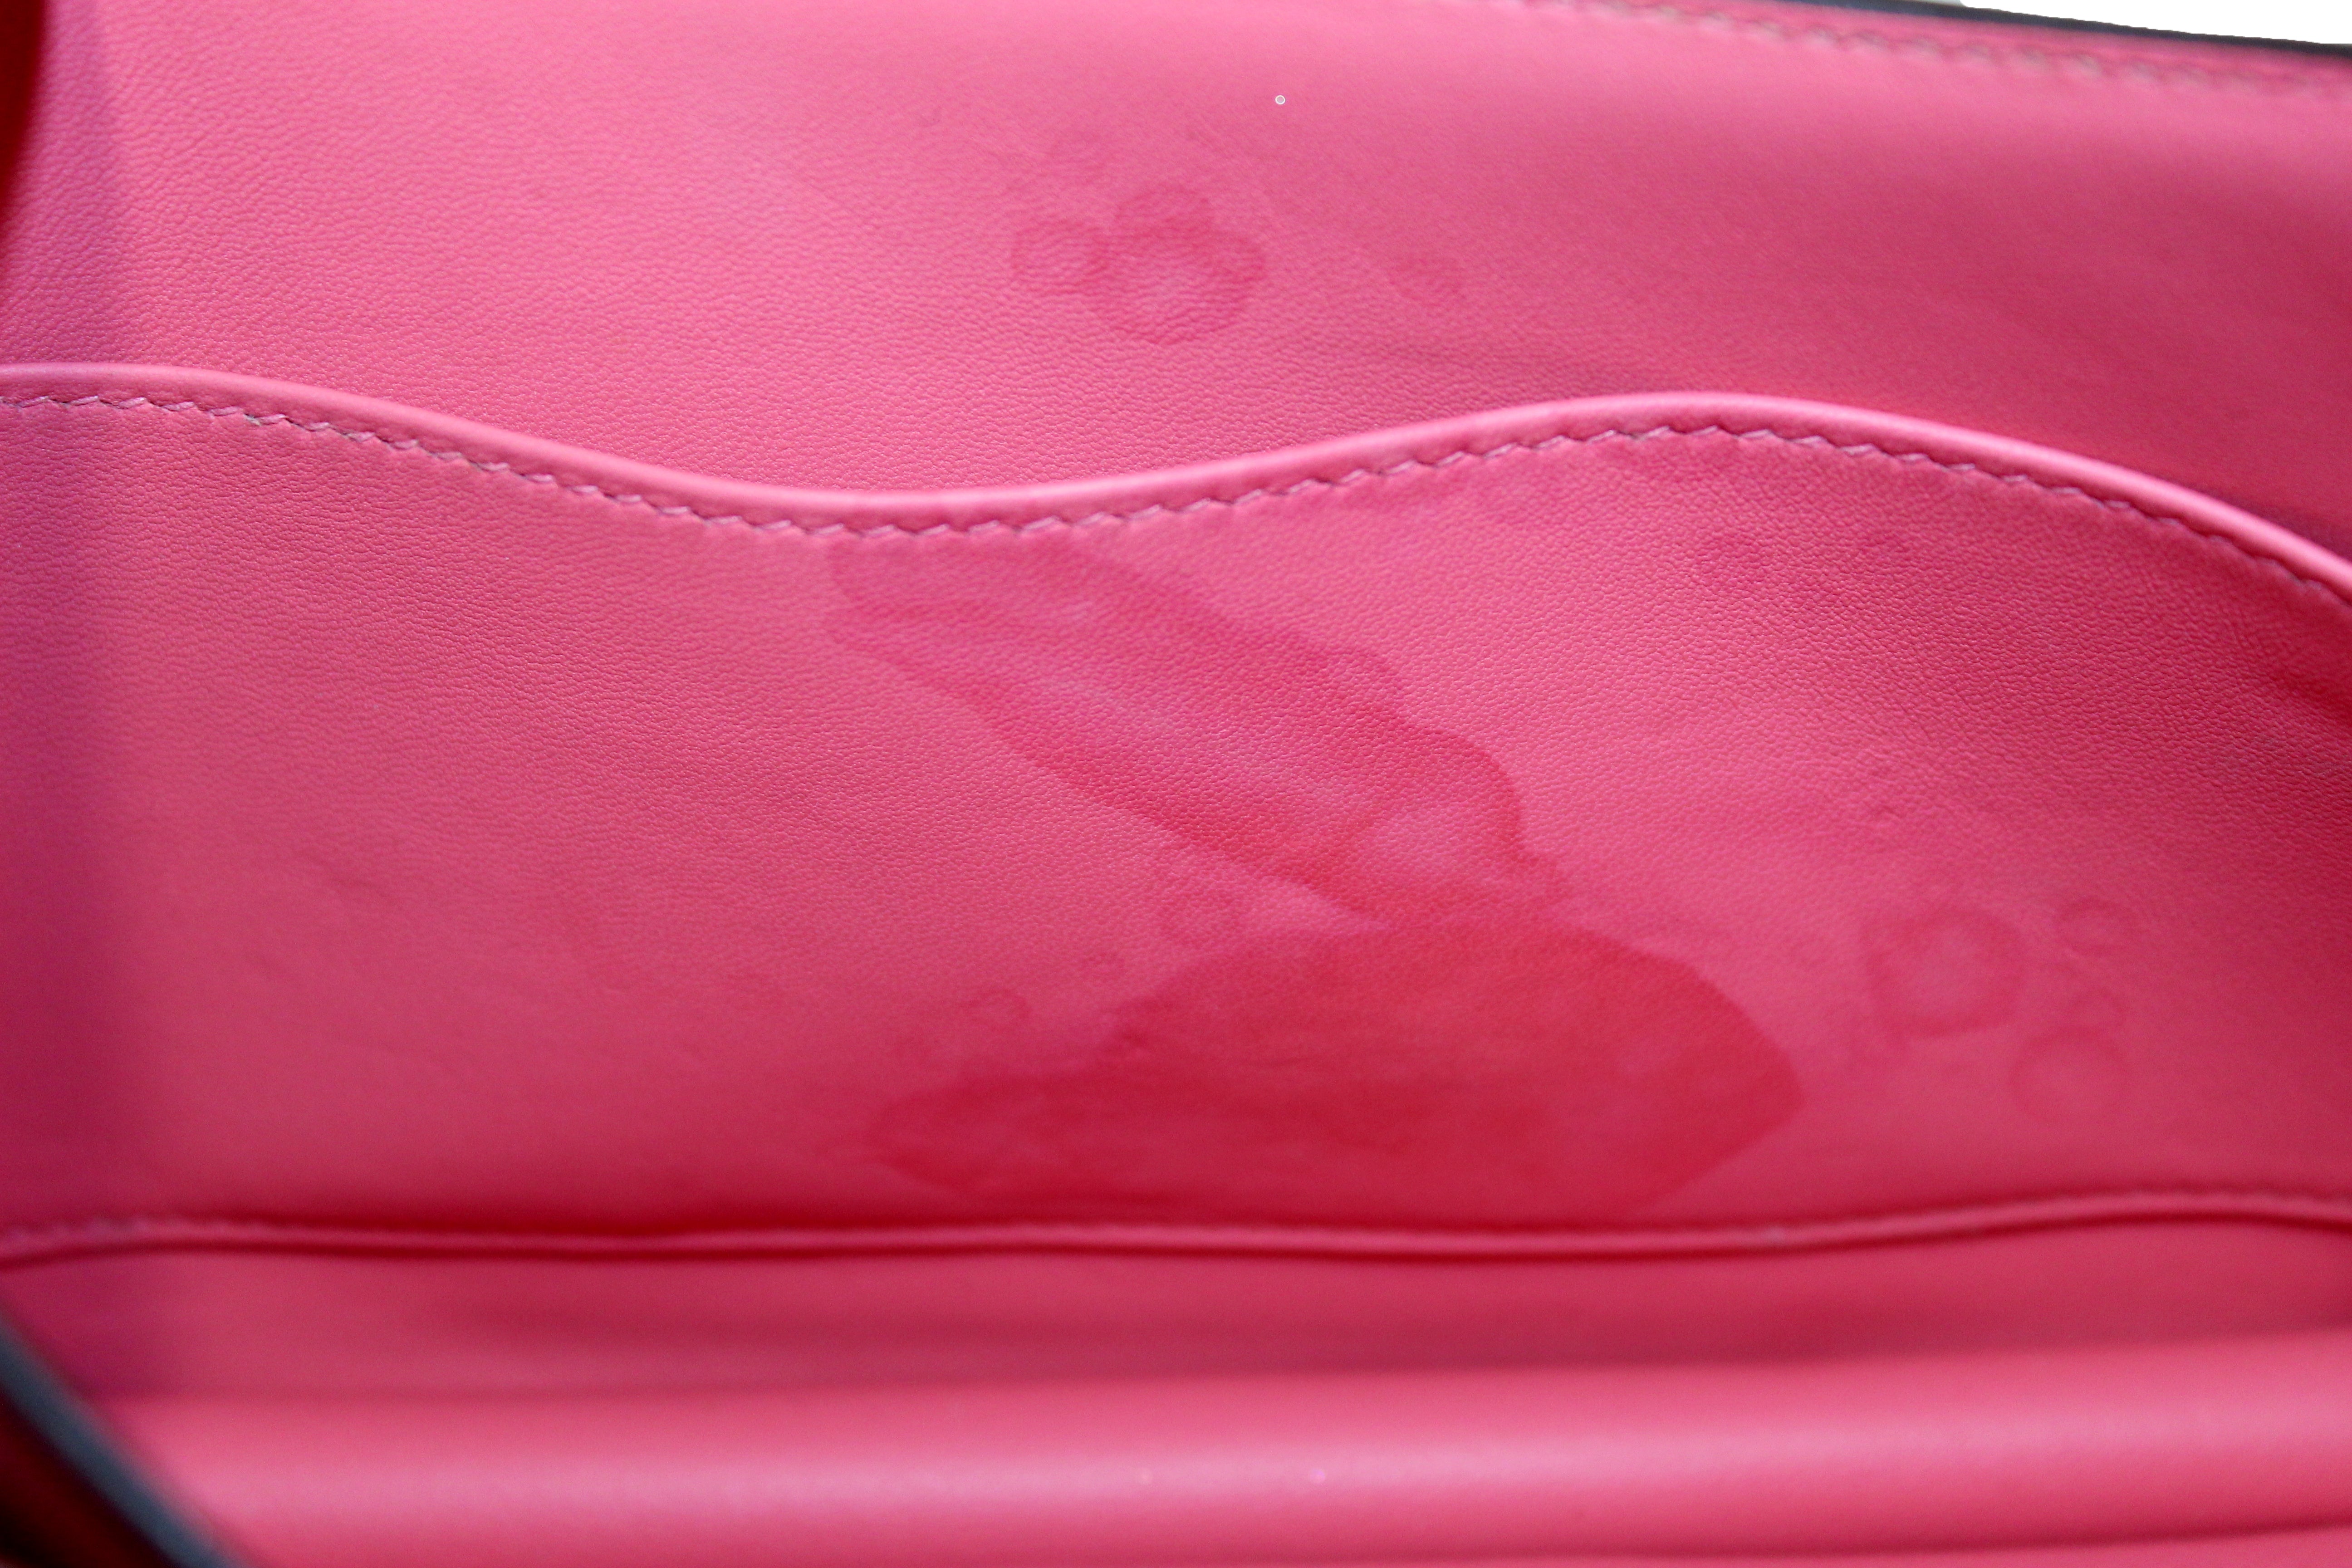 Hermes GHW Constance 24 2Way Shoulder Bag Veau Epsom Leather Rose Azalee  Pink - The ICT University